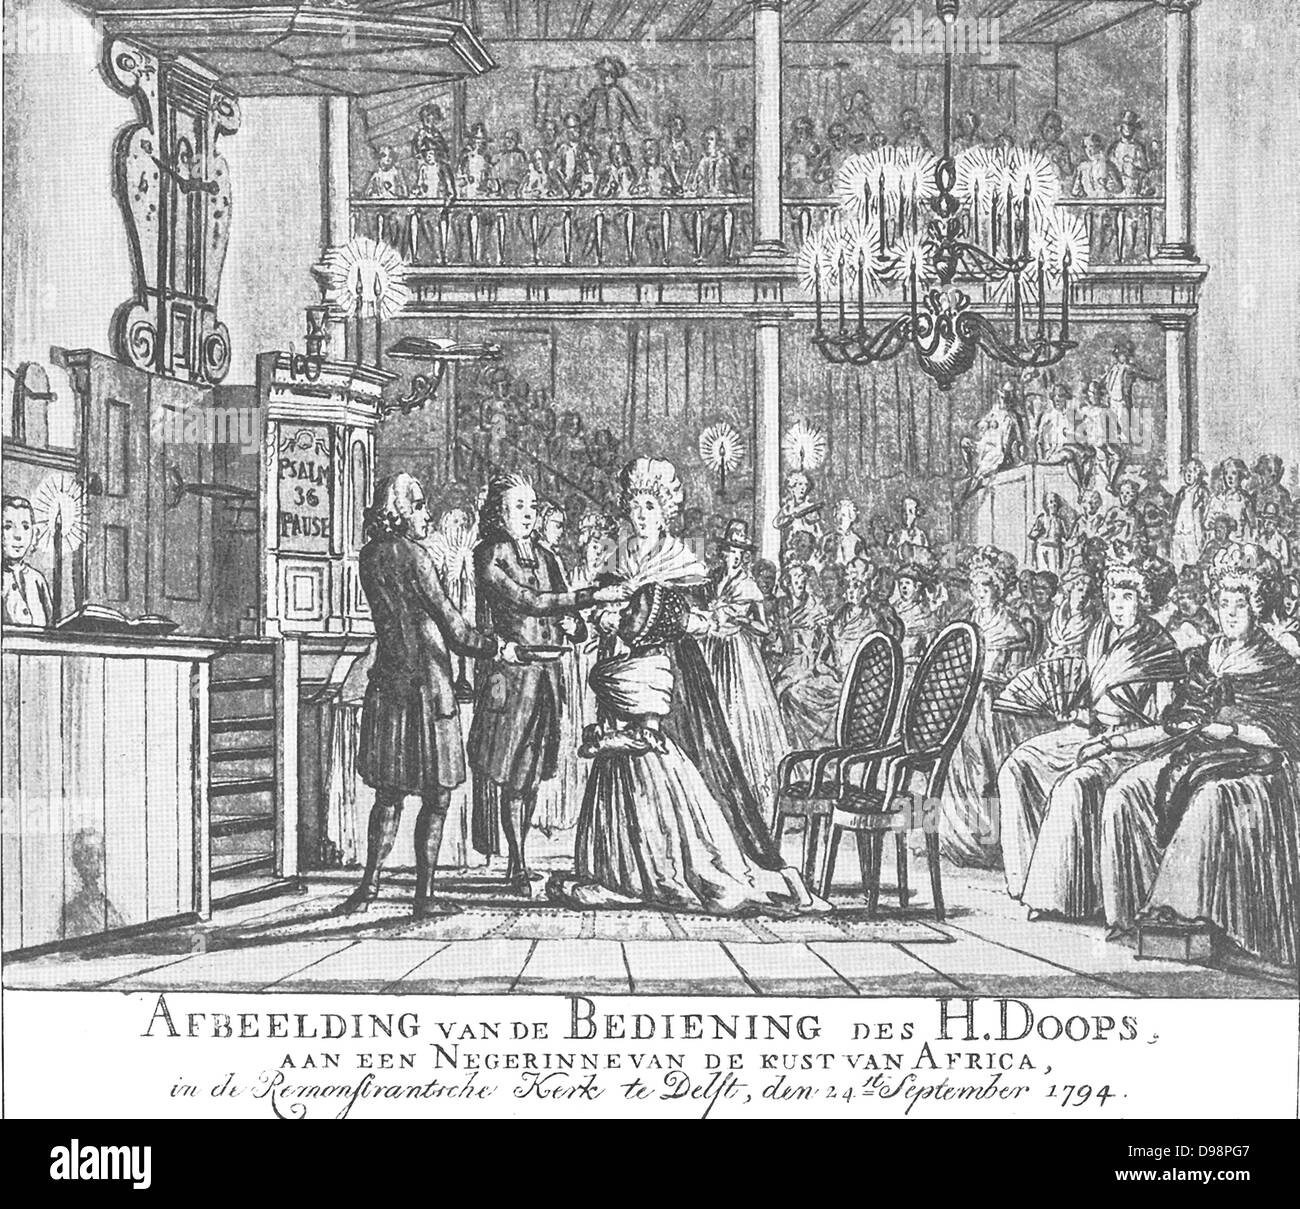 Photo du baptême du saint ministère, un Rinne ignorant de la côte de l'Afrique, à l'Remonftrantsche Église de Delft, 24 Septembre, 1794. Banque D'Images